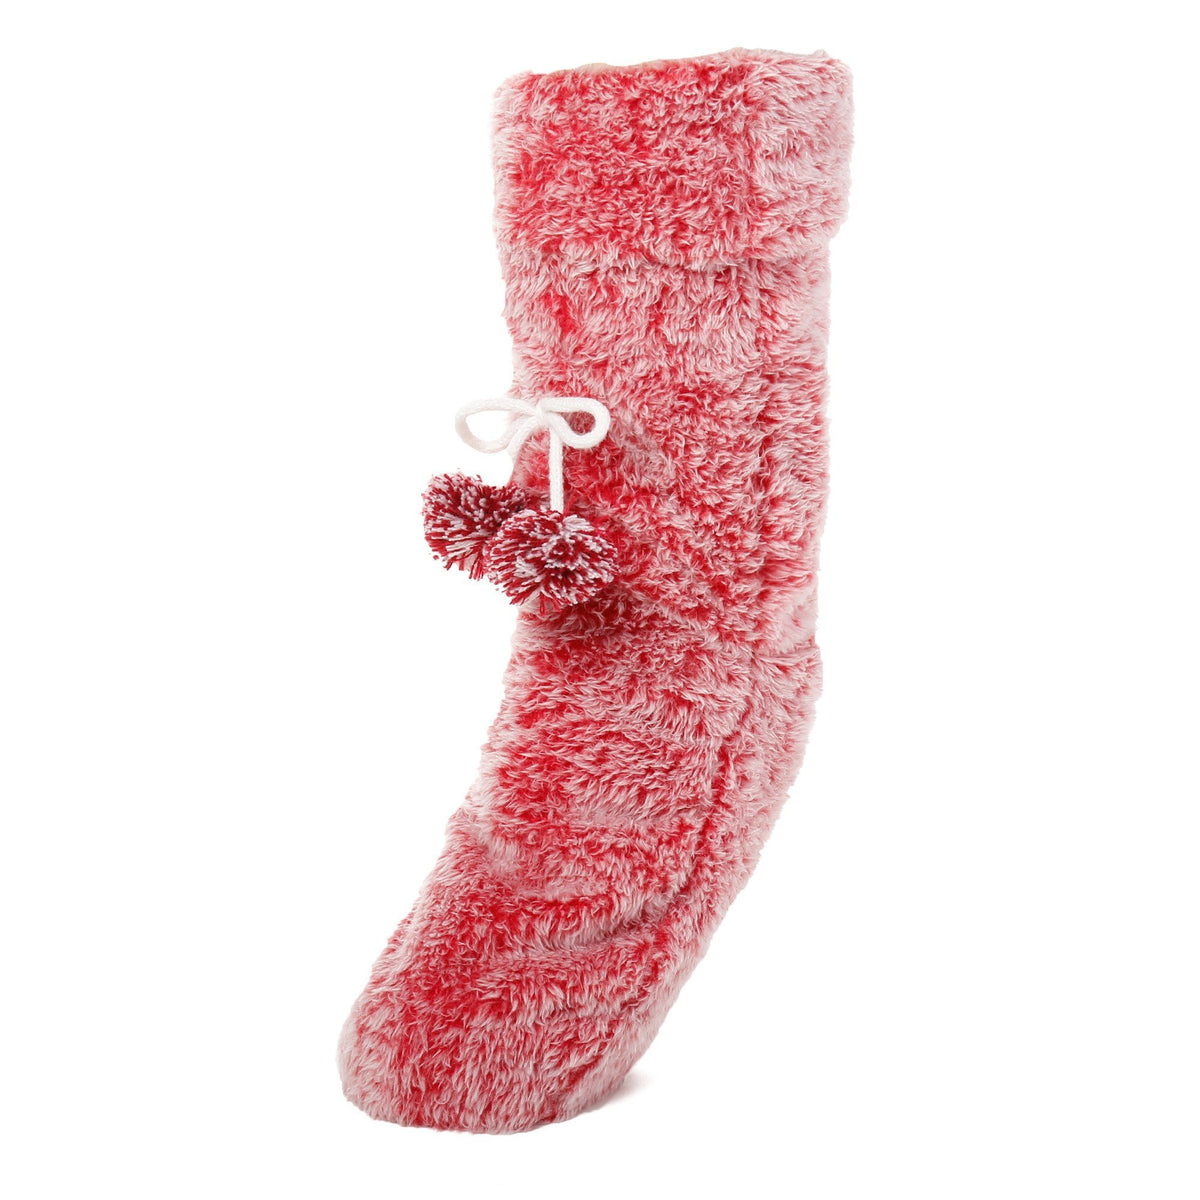 Women's Fuzzy Plush Tall Slipper Socks with Pom-Poms - Red